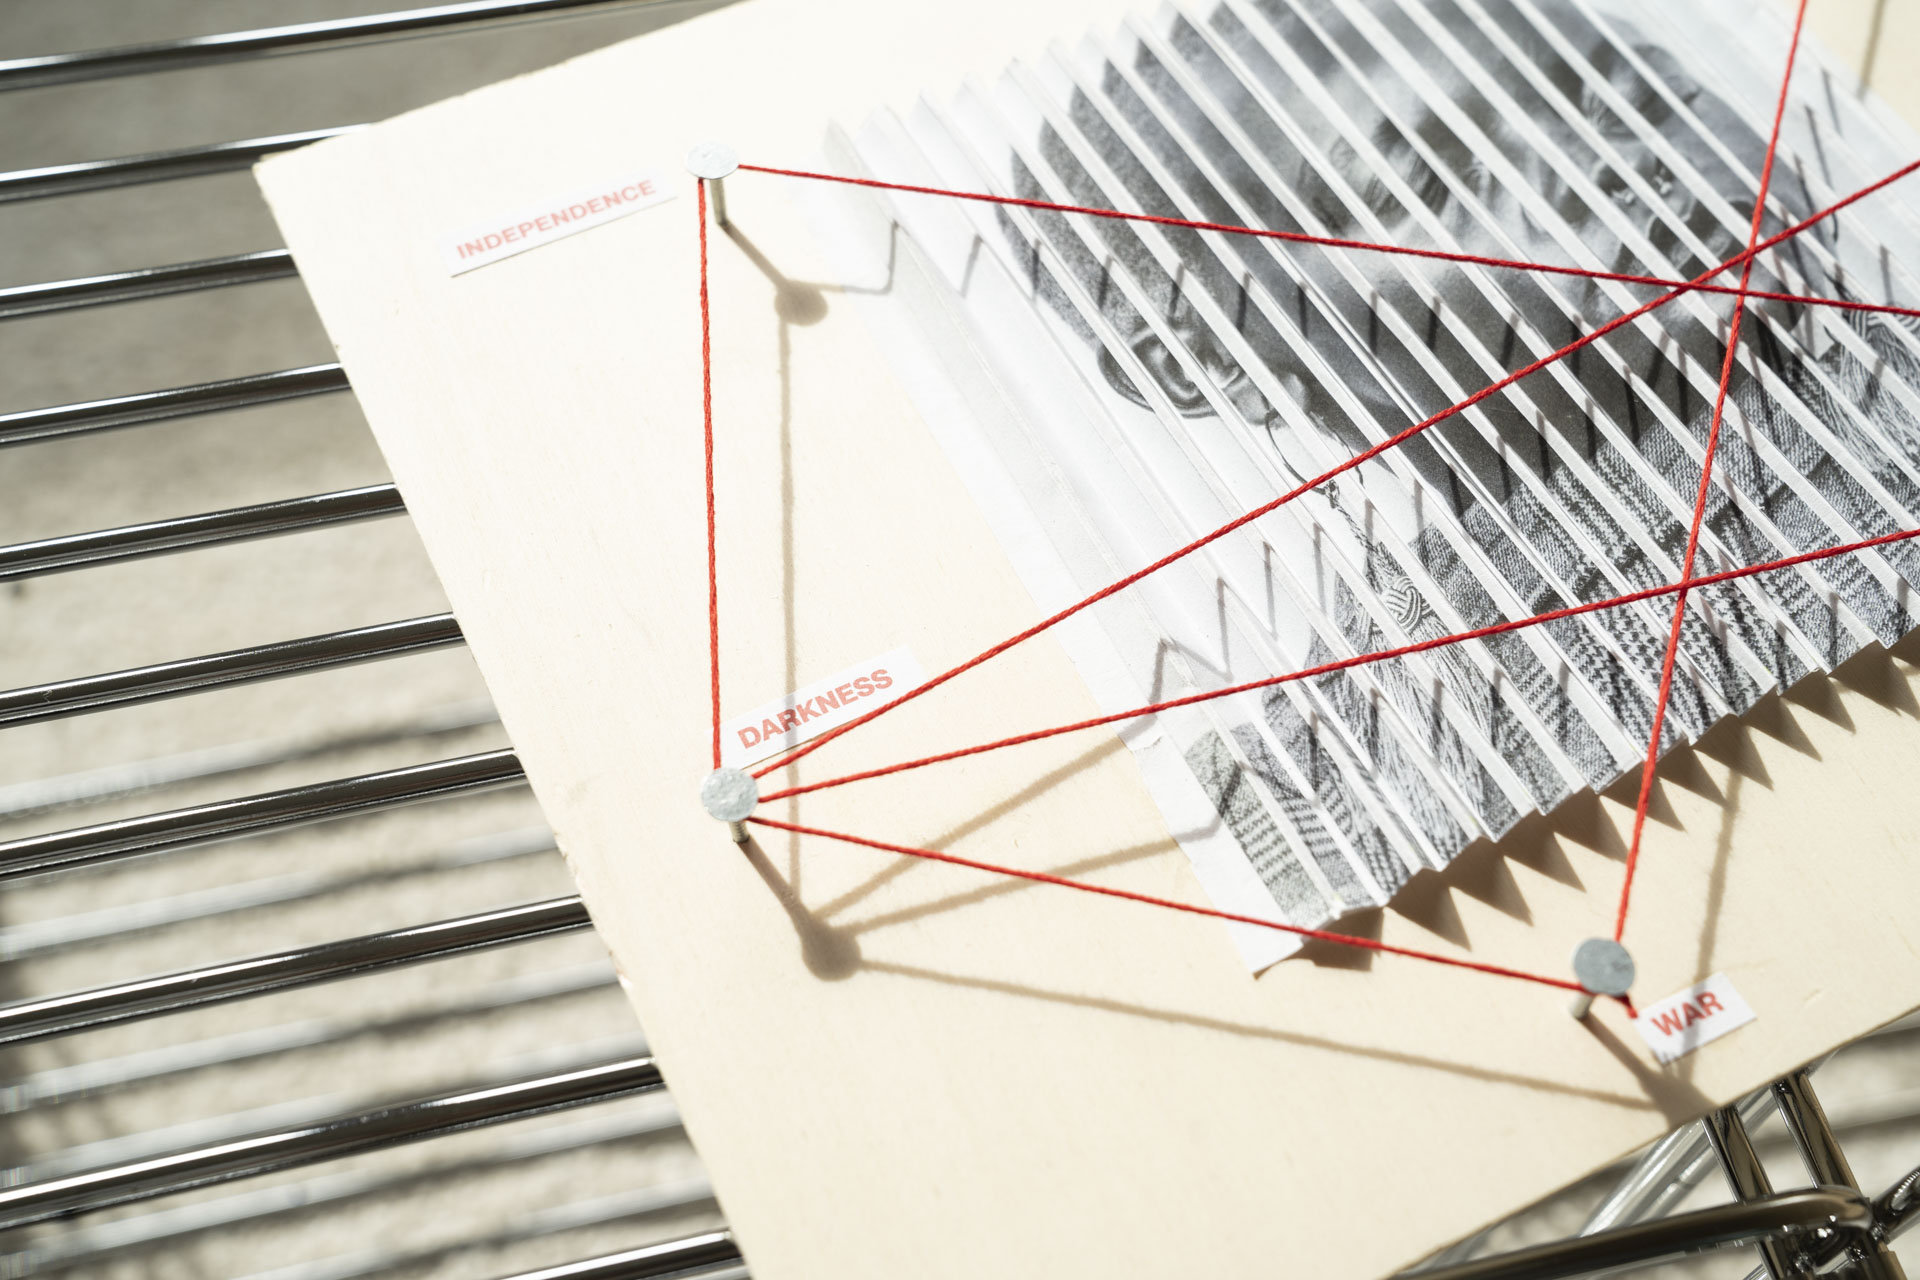 Detailaufnahme eines Holzbretts mit einem gefalteten Blatt Papier mit einem Bild darauf. Über dem Bild ein roter Faden mittels Nägel gespant, welcher mehrere Begriffe zu alltagsrelevanten Themen verbindet.